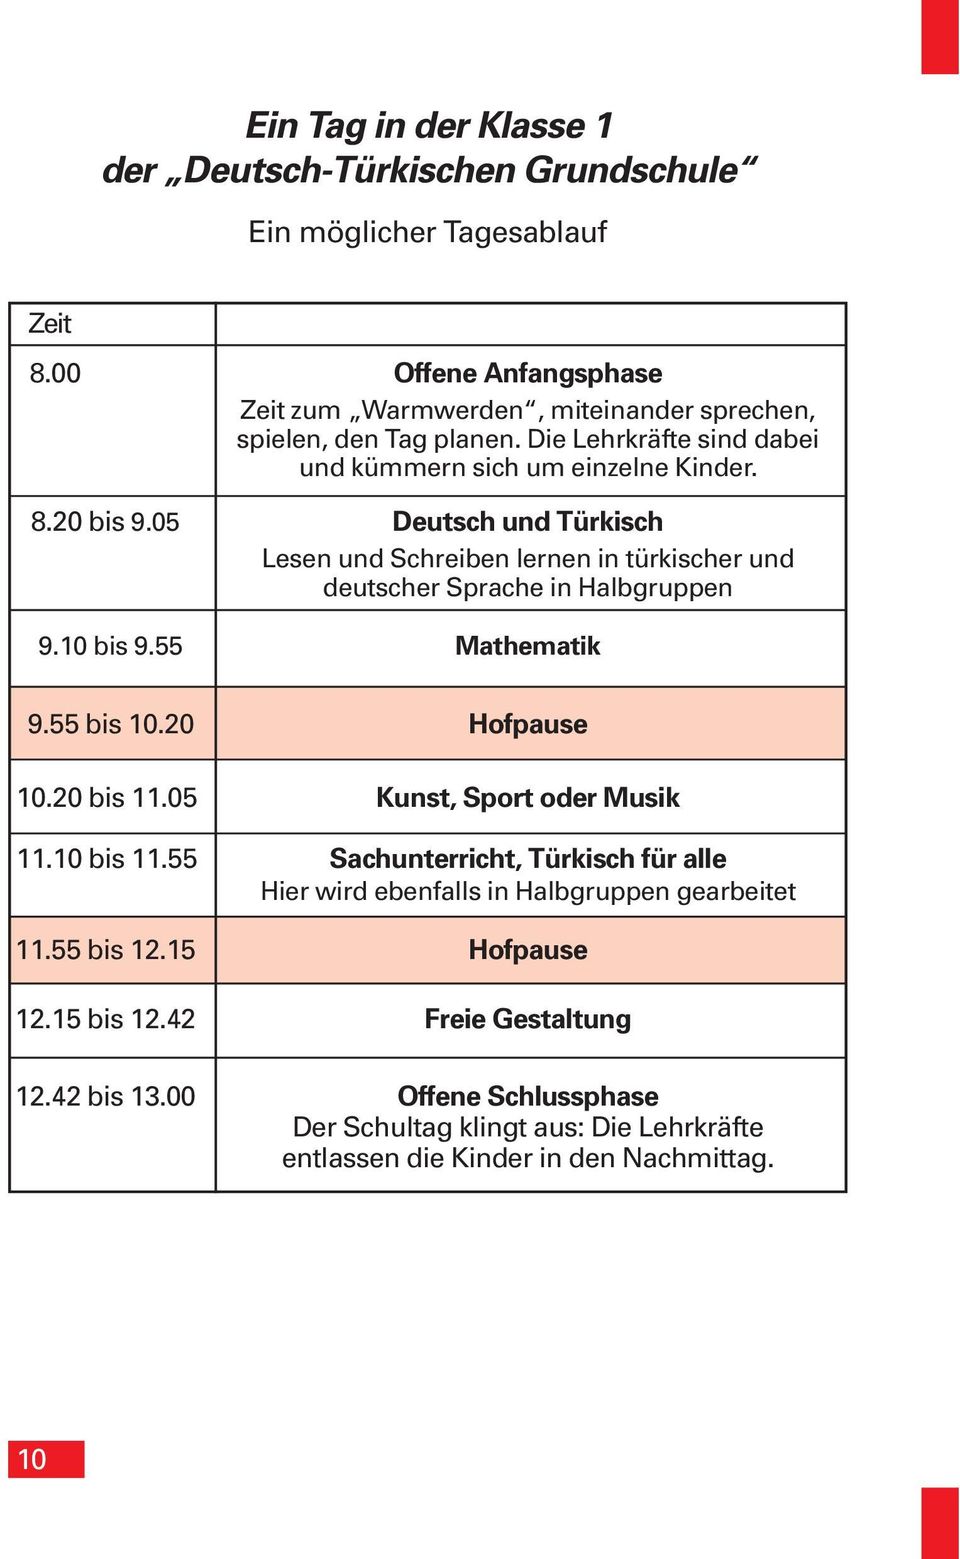 05 Deutsch und Türkisch Lesen und Schreiben lernen in türkischer und deutscher Sprache in Halbgruppen 09.10 bis 9.55 Mathematik 9.55 bis 10.20 Hofpause 10.20 bis 11.